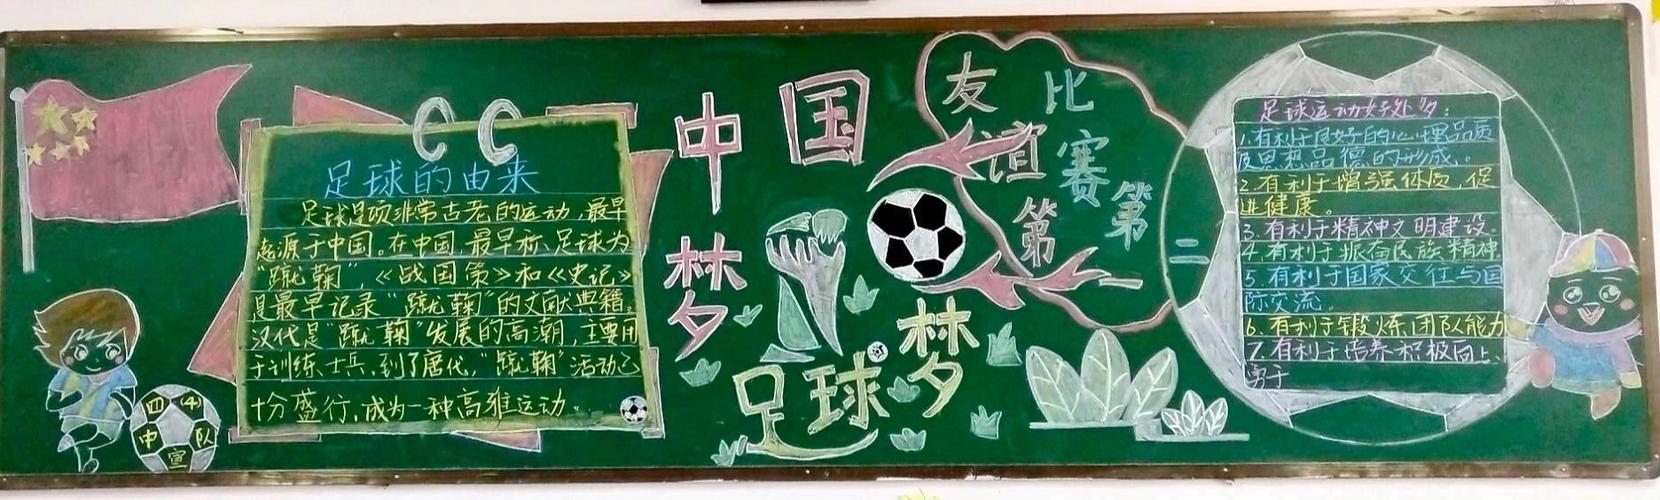 记东城实验小学足球知识黑板报活动 写美篇     为了推进校园足球文化